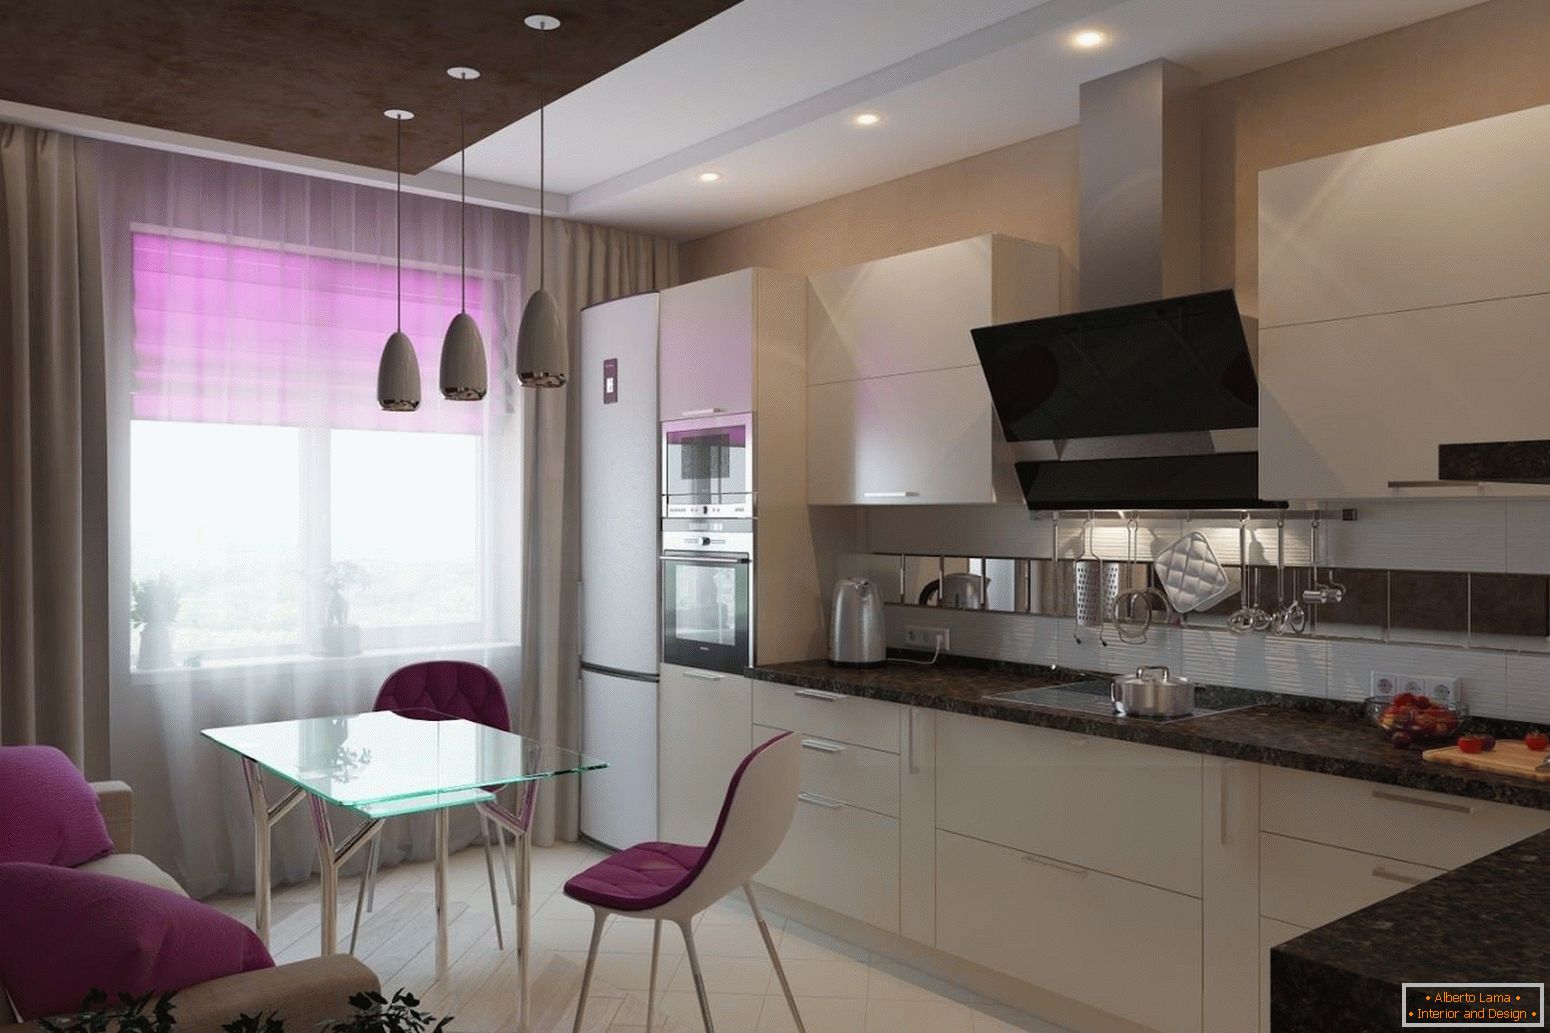 Biela kuchyňa s lilacovými prvkami dekorácie